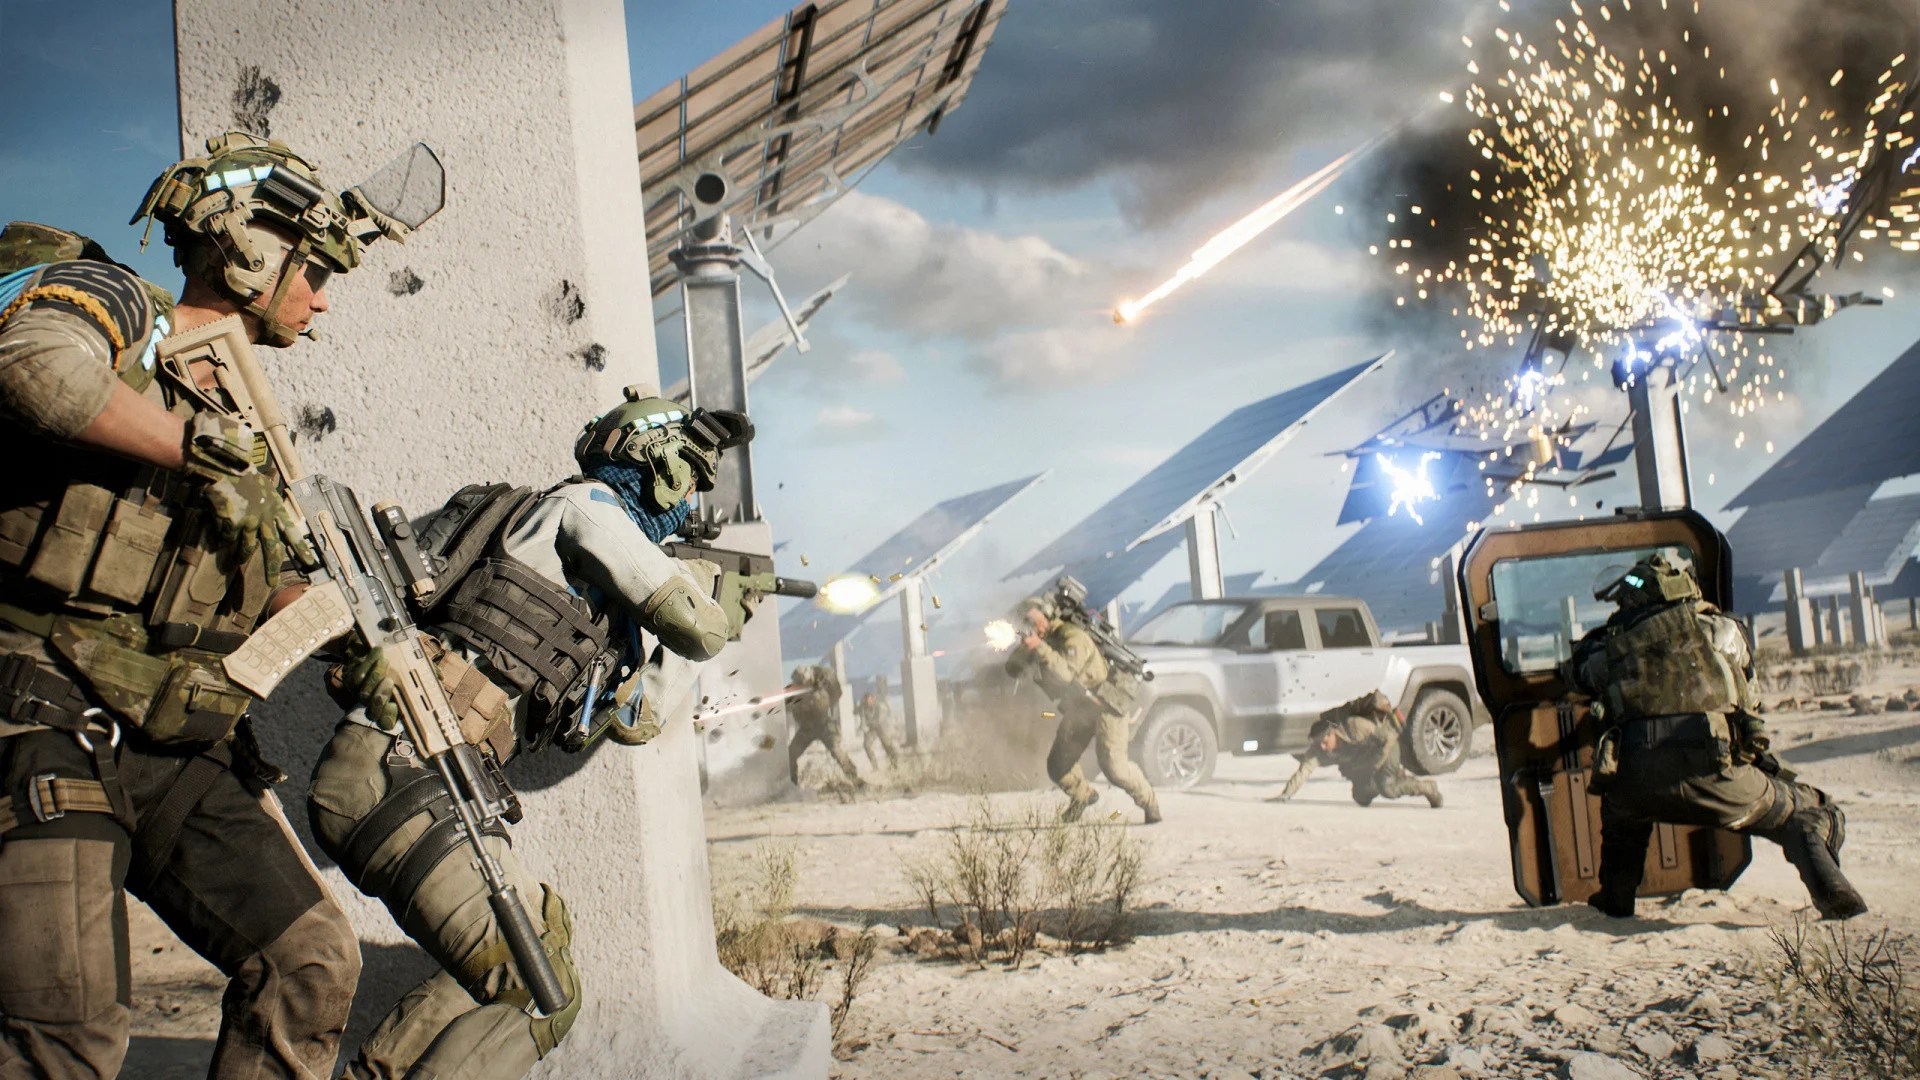 Баги, вылеты и дисбаланс: геймеры обрушили рейтинг Battlefield 2042 на Metacritic - фото 1